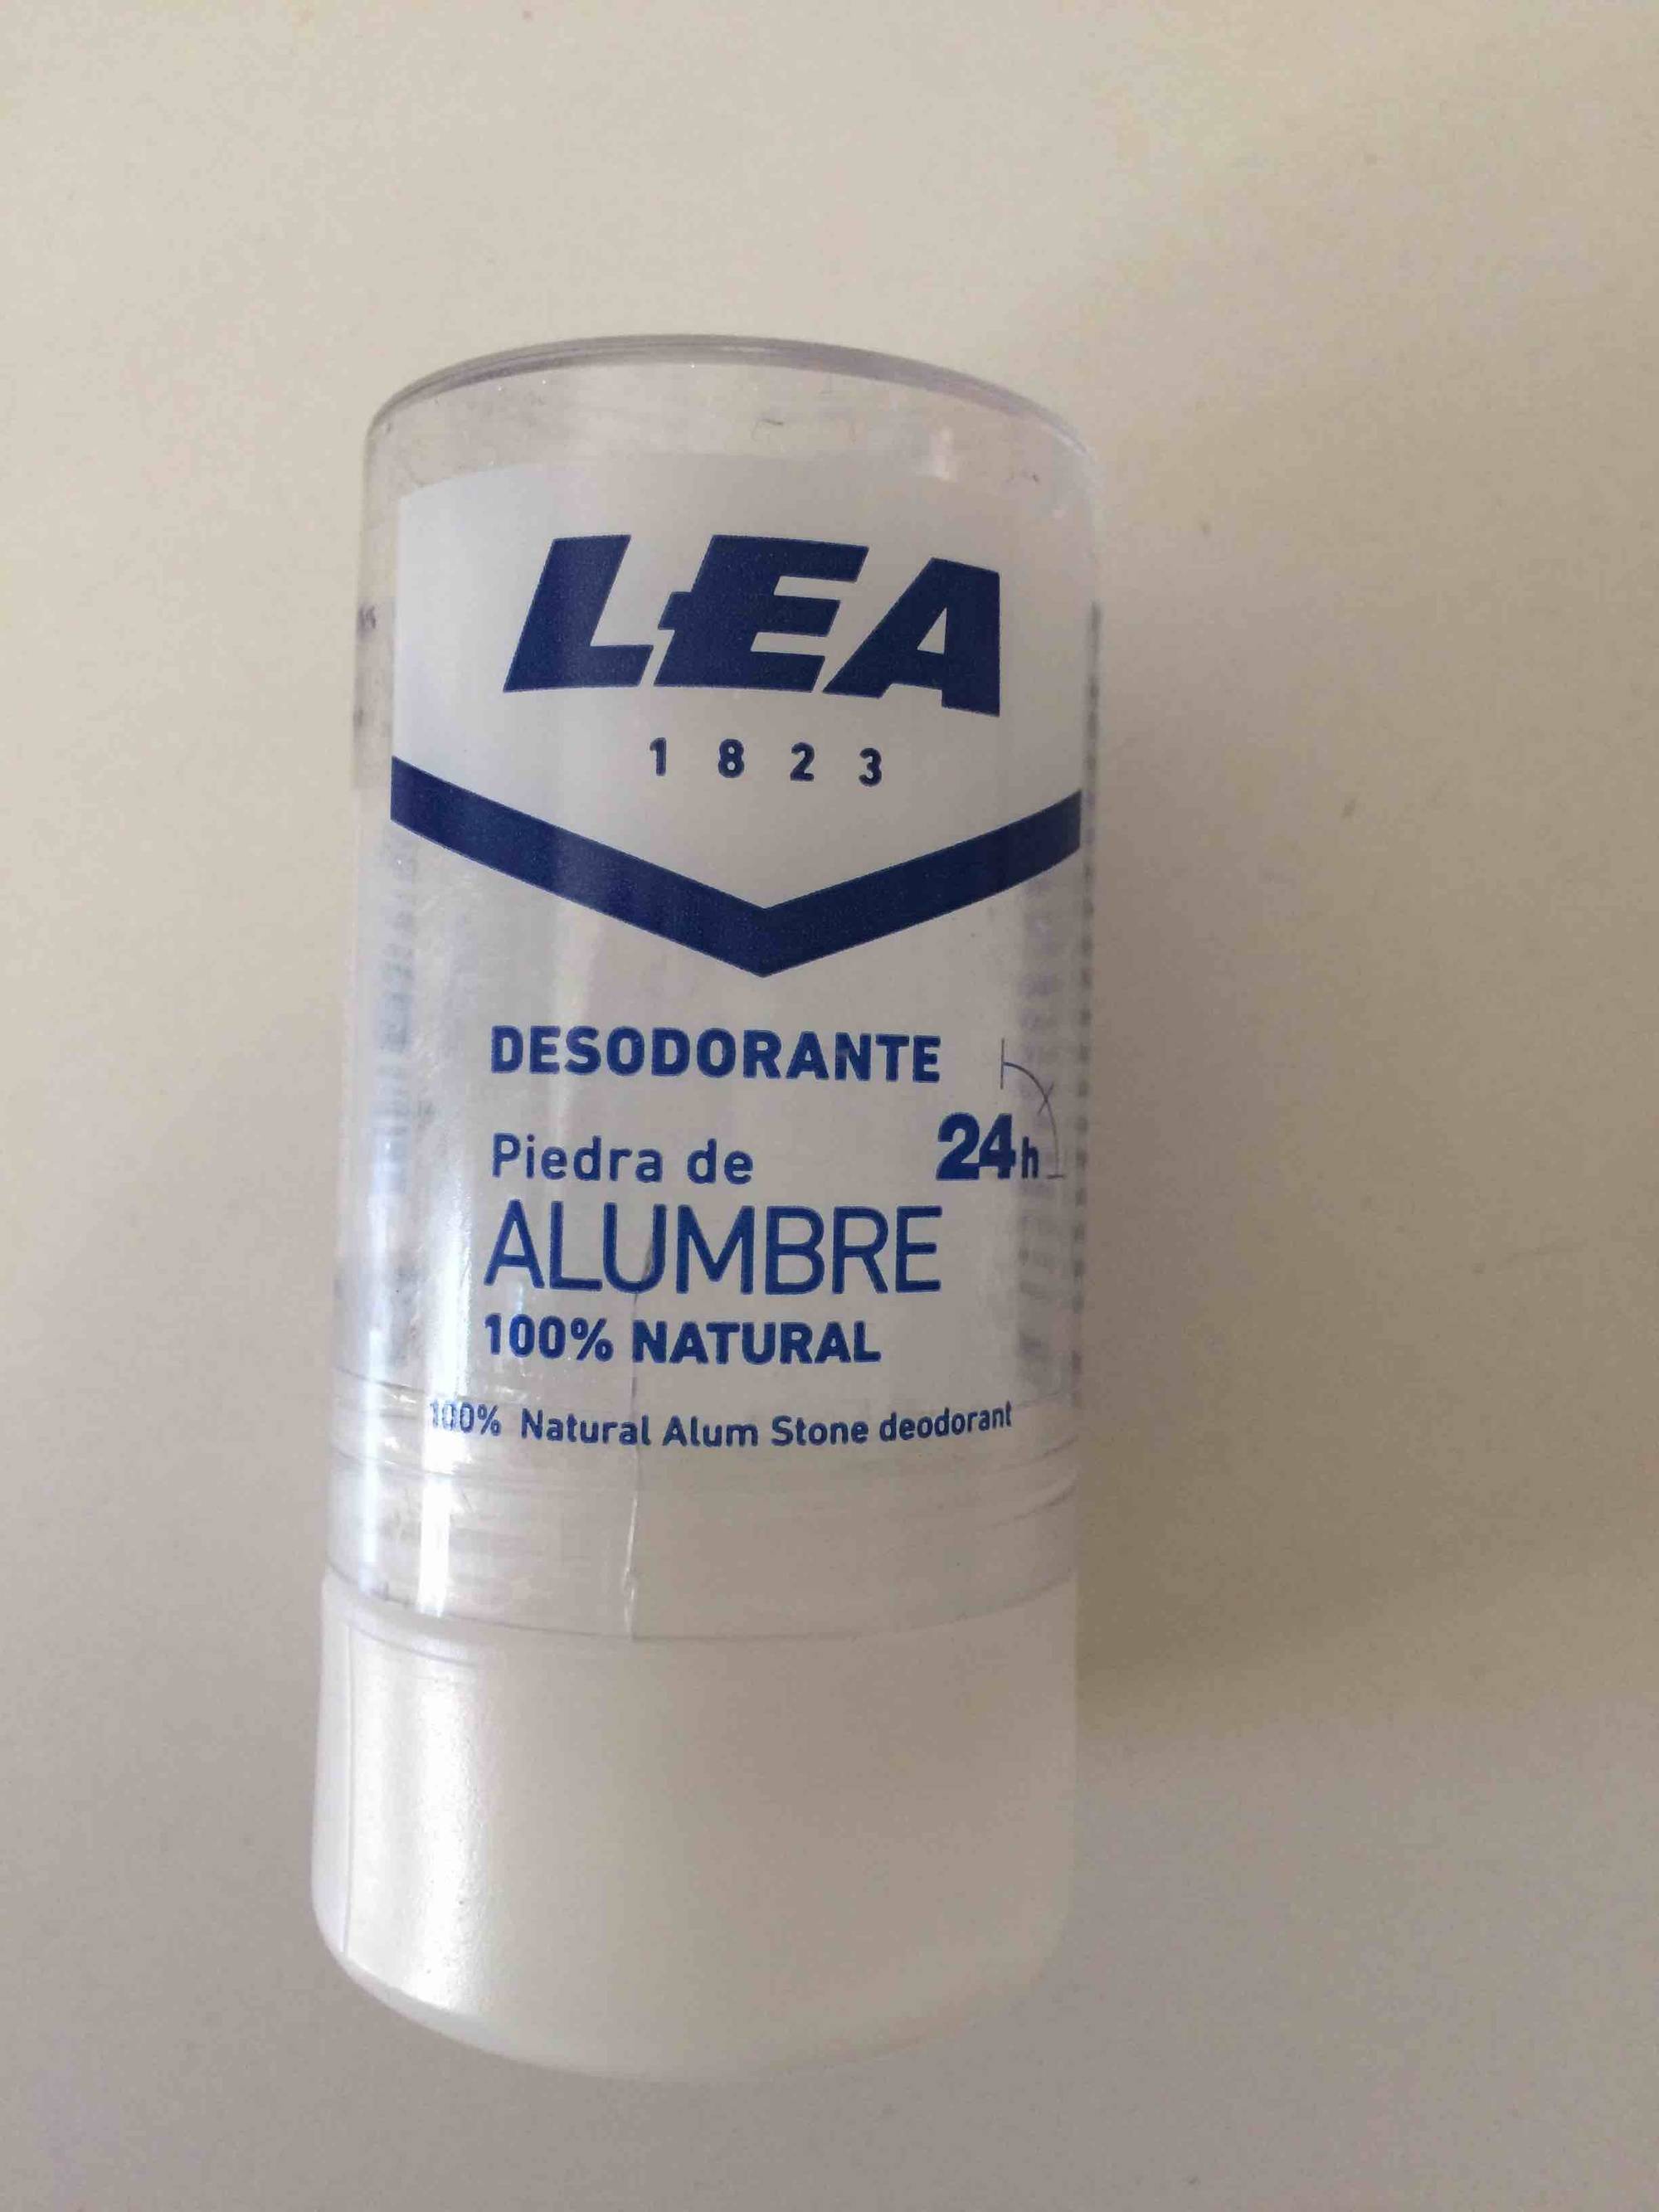 LEA - Piedra de Alumbre - Desodorante 24h